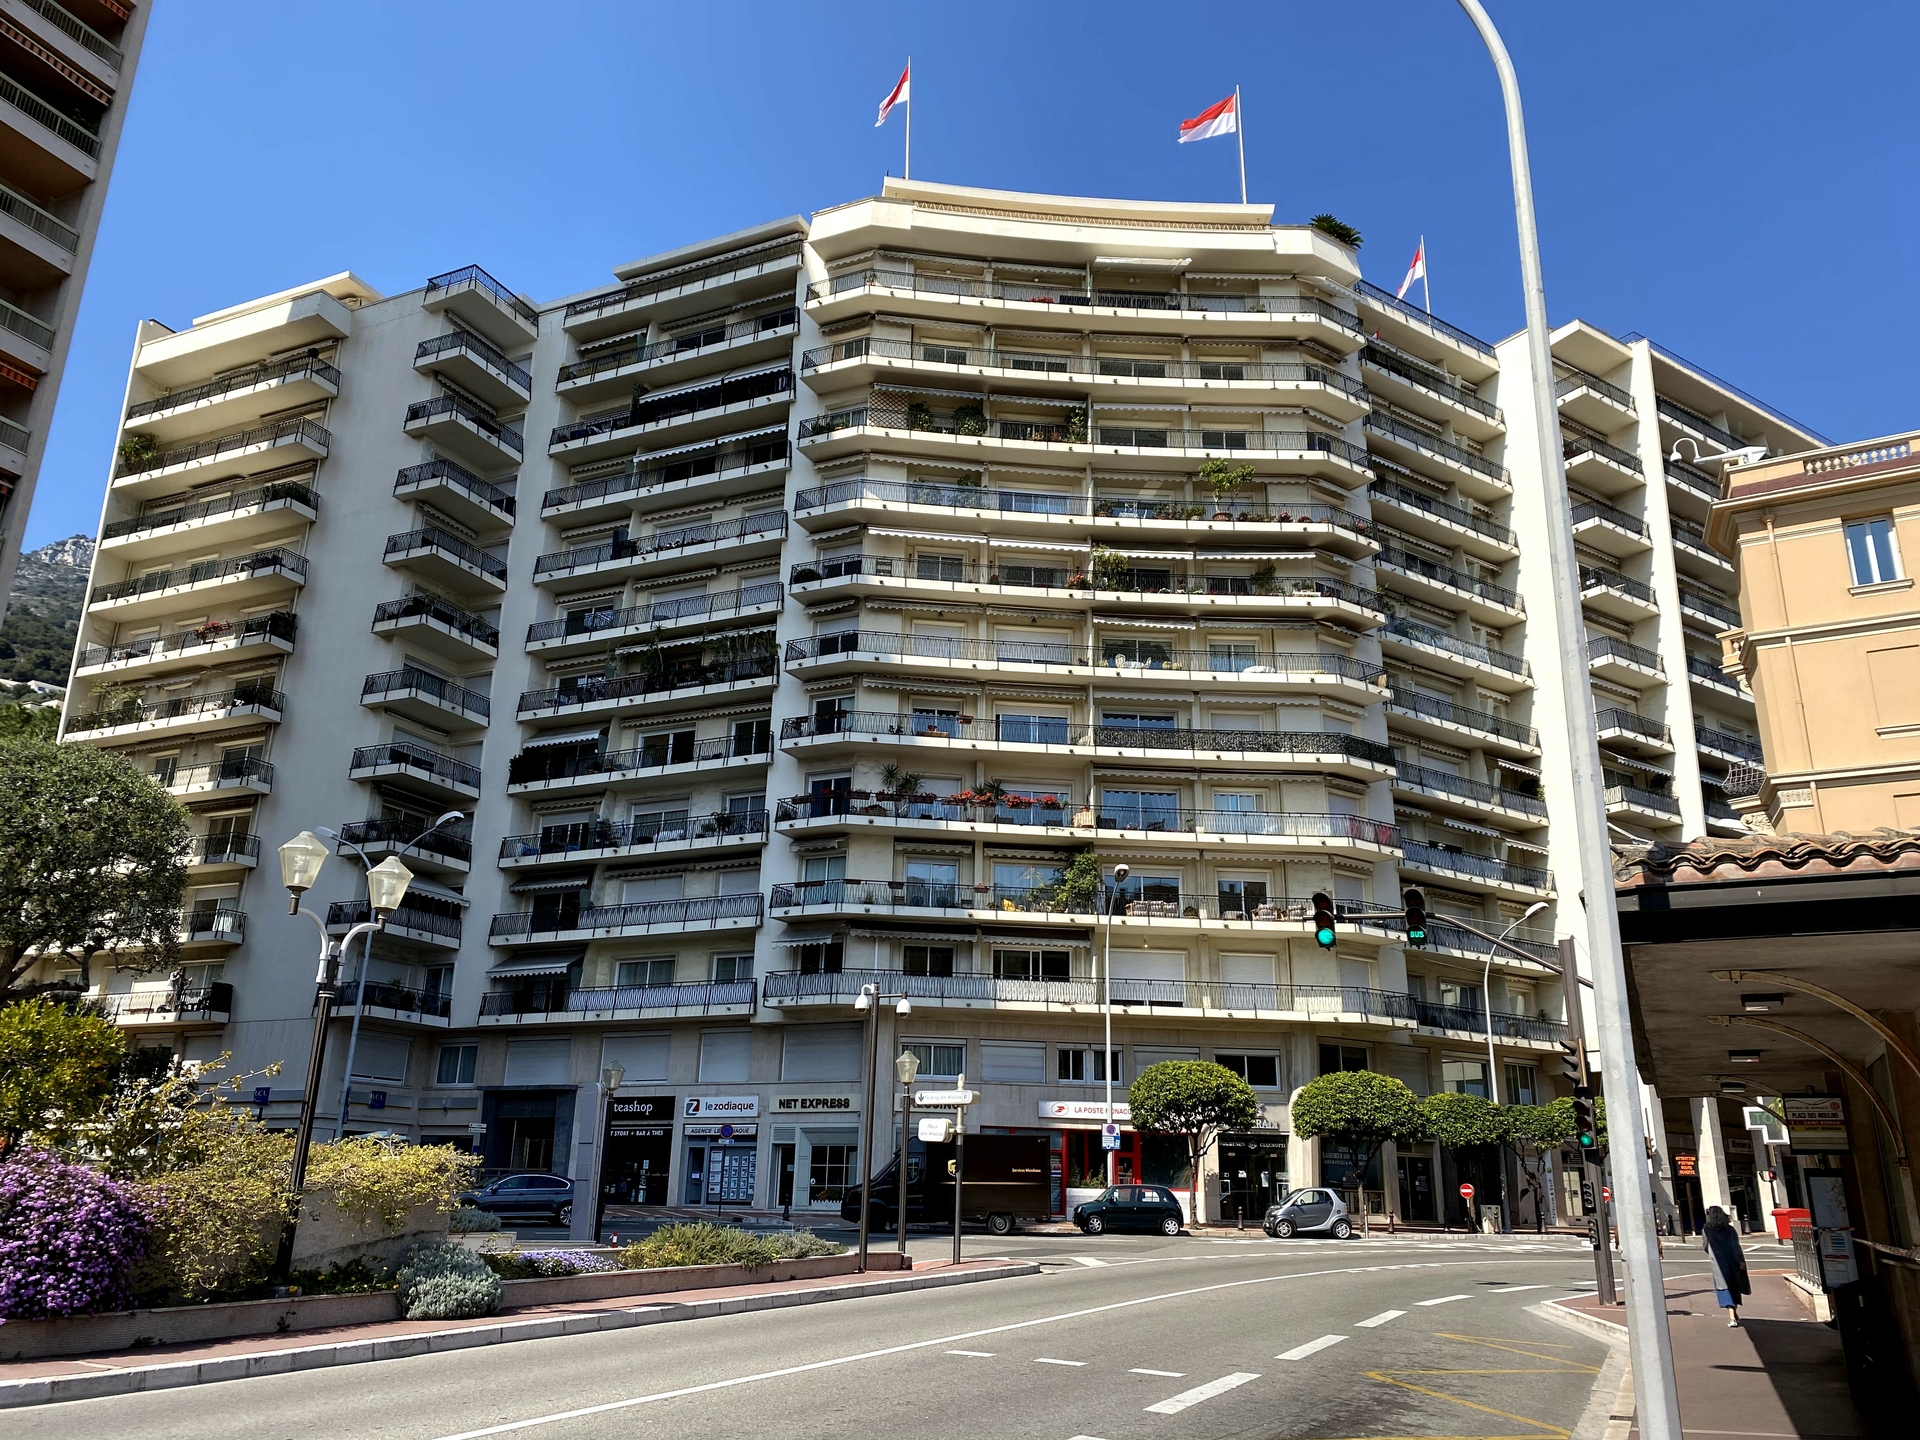 MONTE-CARLO | CONTINENTAL | STUDIO - Offices for sale in Monaco